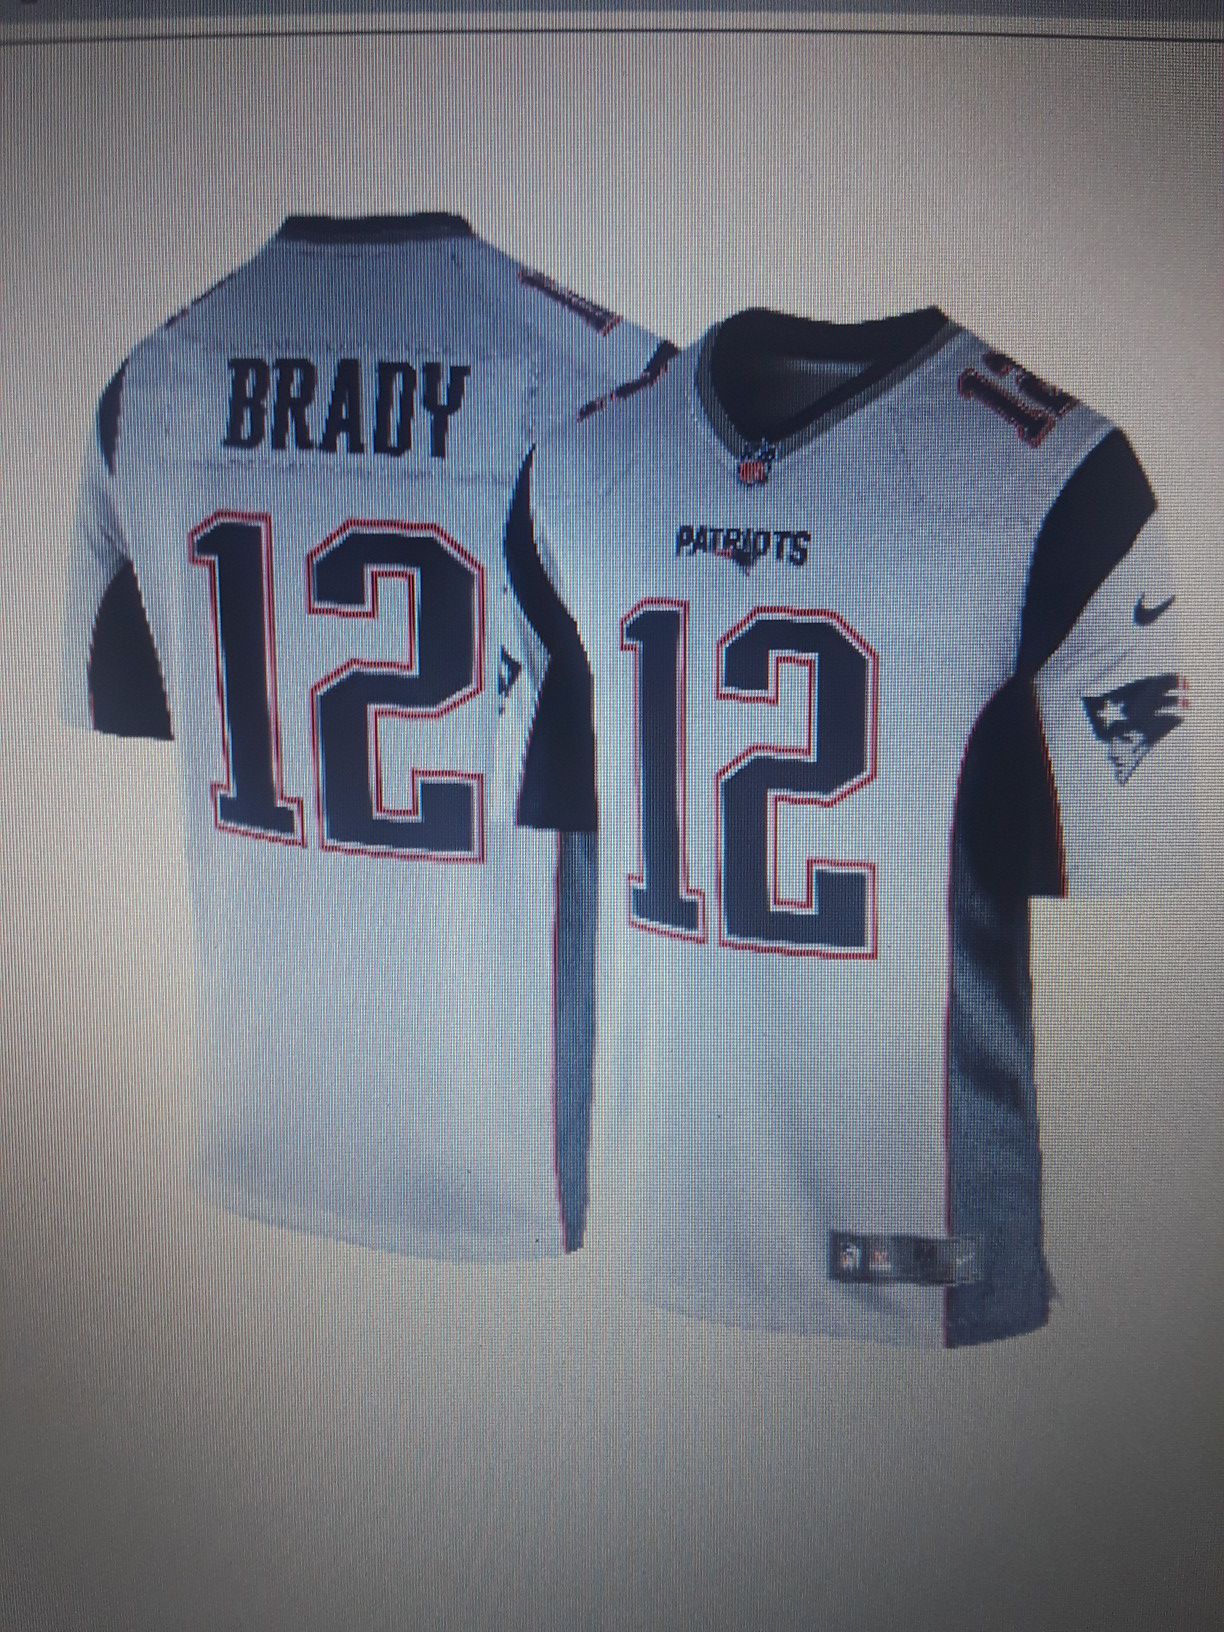 Nike Men's Away Game Jersey - New England Patriots / Tom Brady #12 - 2XL, BRAND NEW !!